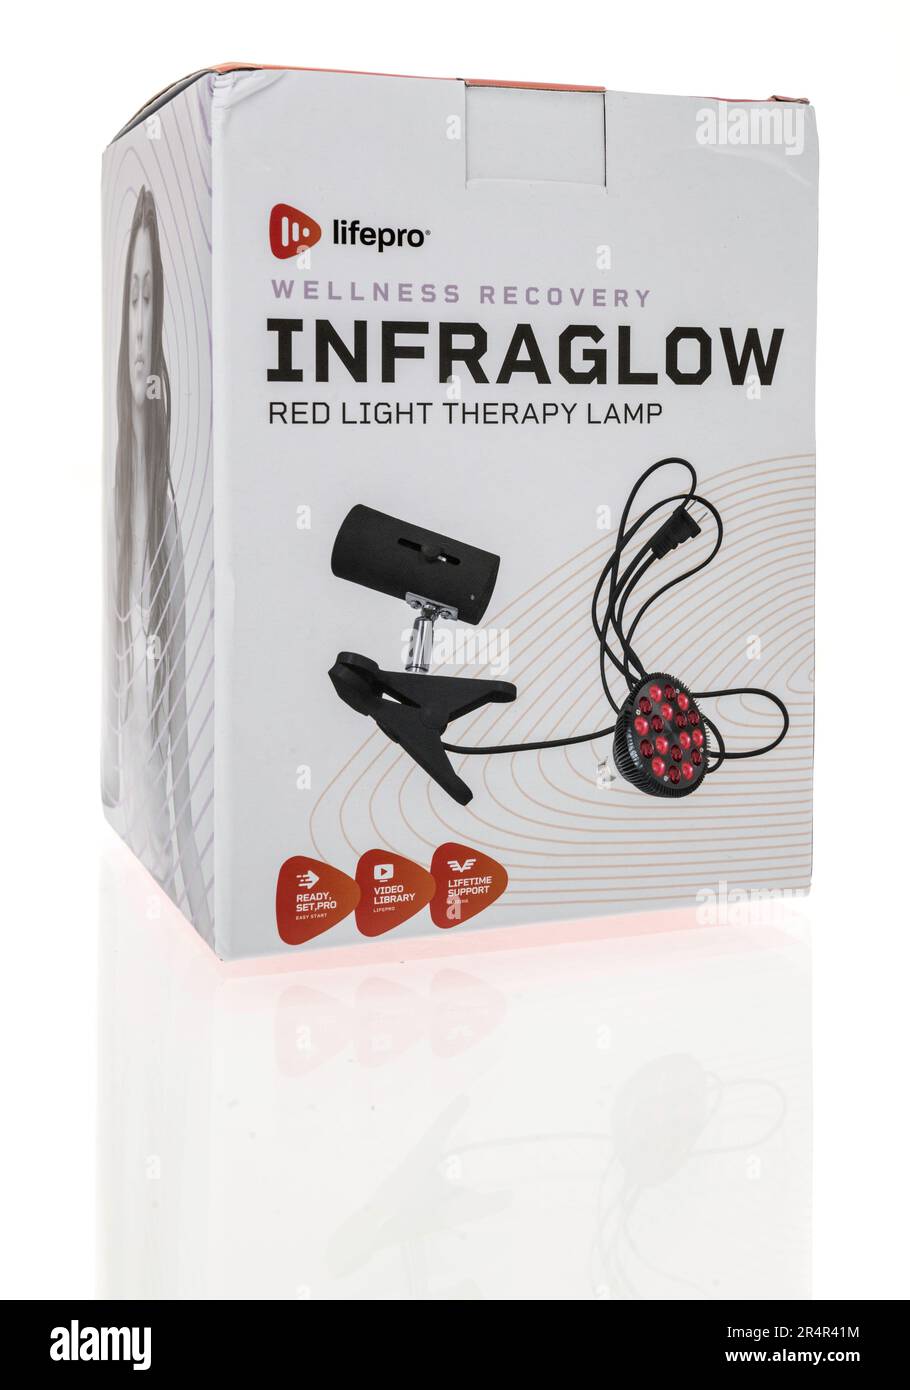 Winneconne, WI - 16 avril 2023: Un paquet de Lifepro Wellness Recovery infraglow lampe rouge luminothérapie sur un fond isolé. Banque D'Images